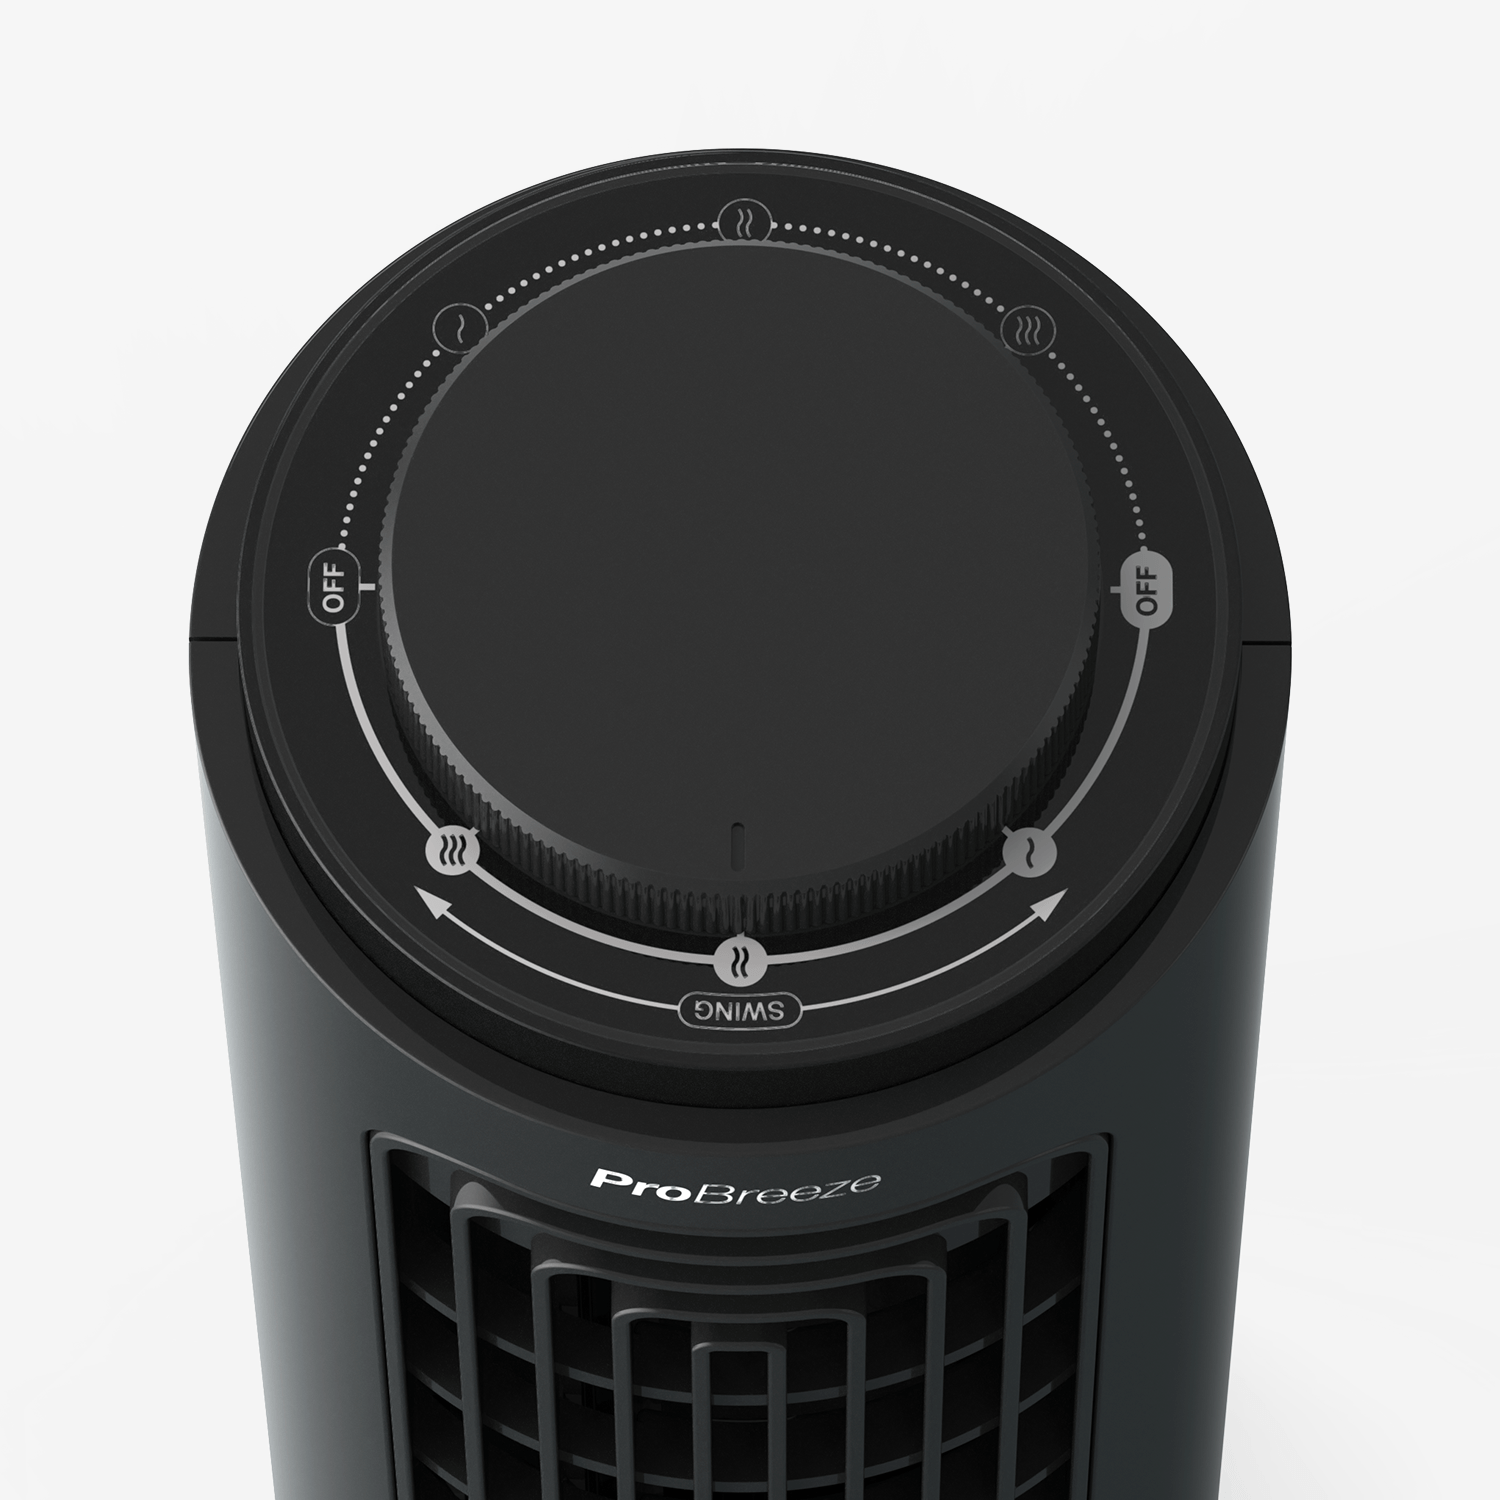 Desktop 3 Speed Mini Tower Fan - Black